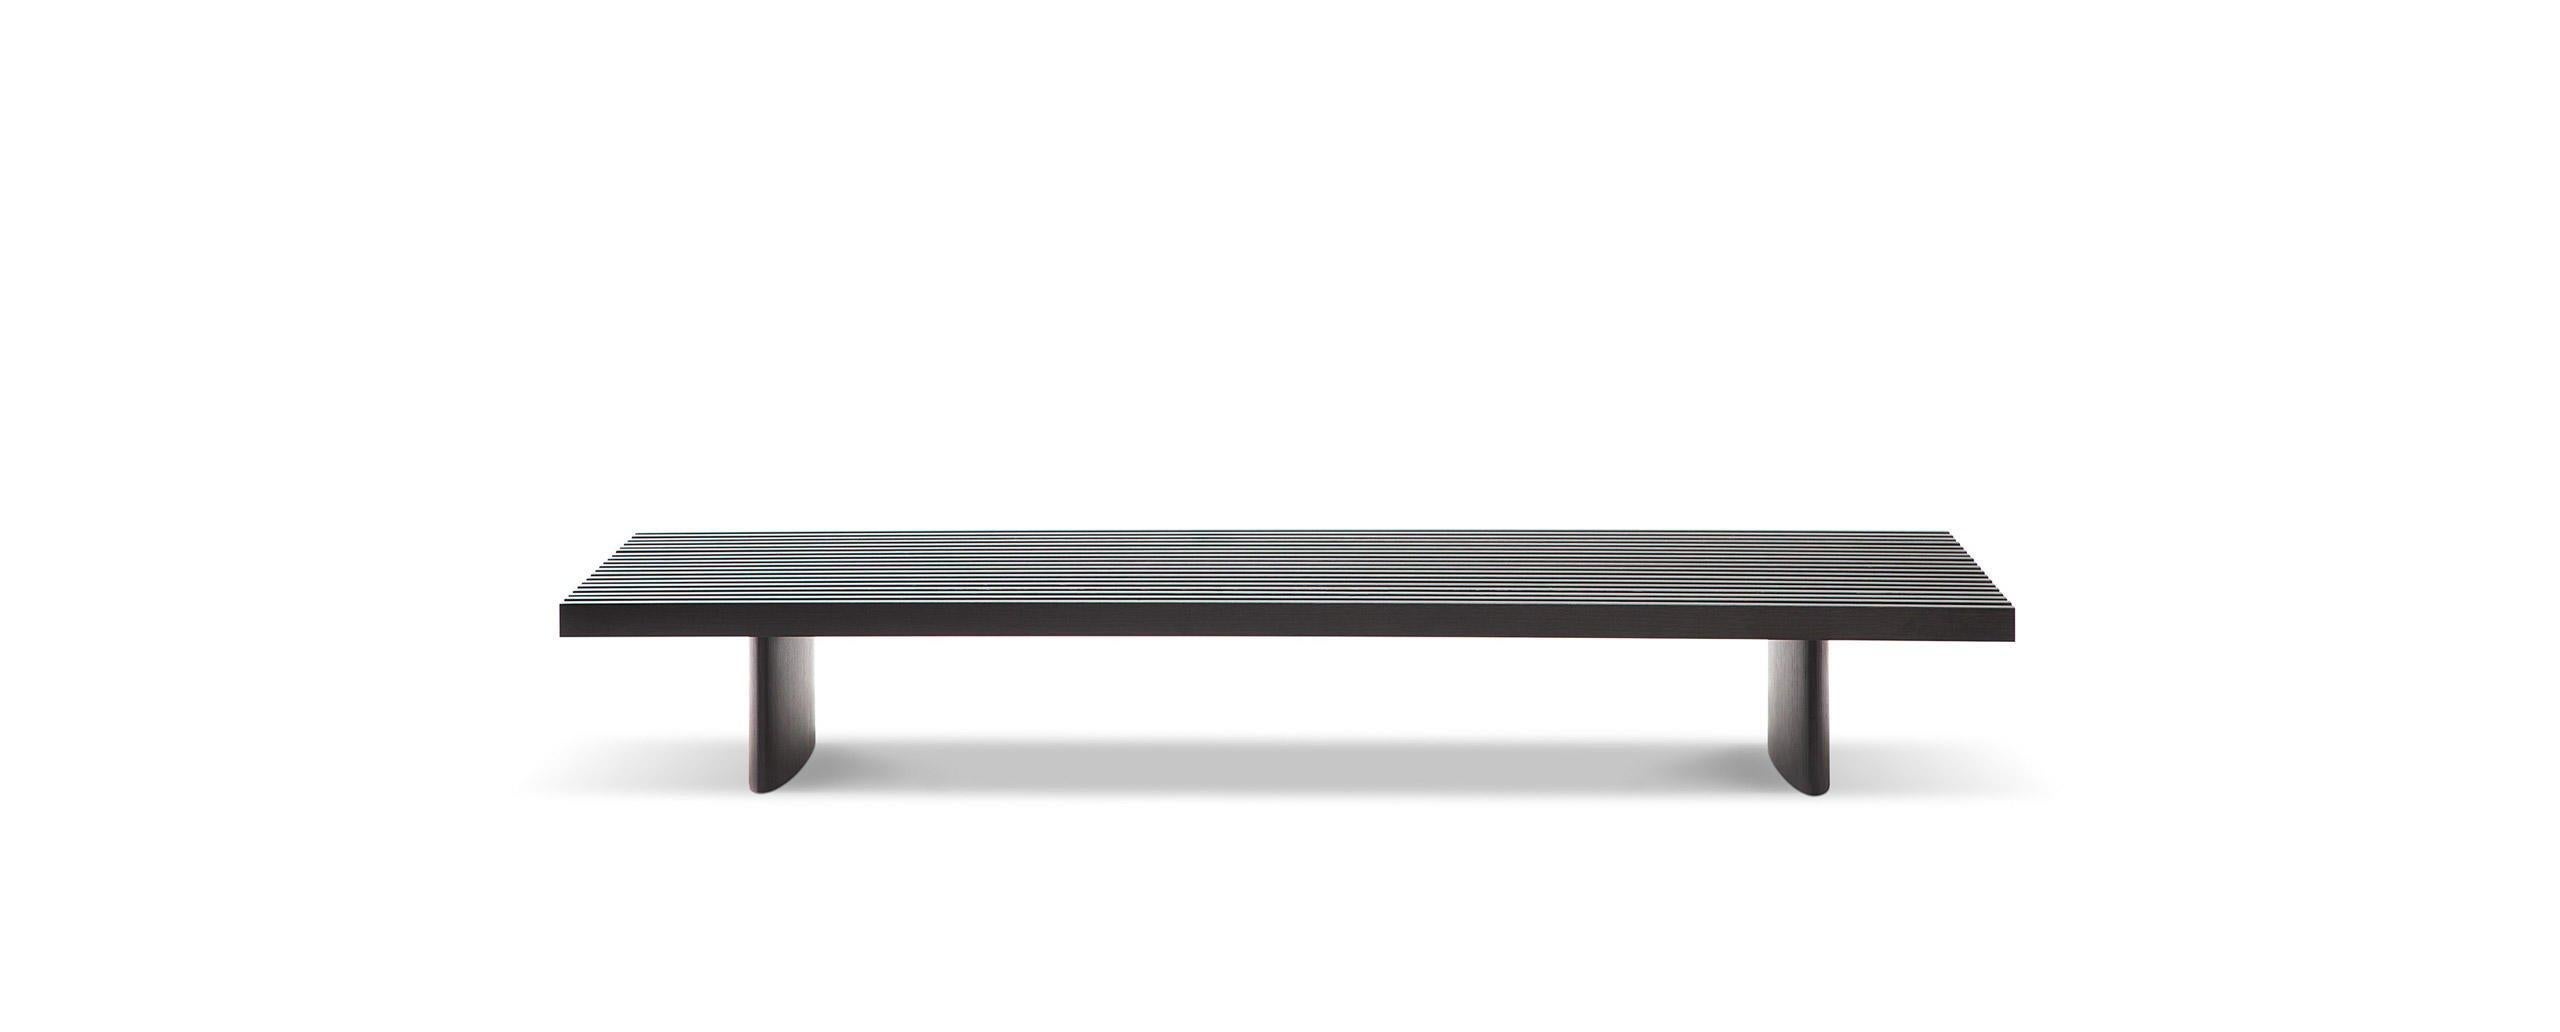 Niedriger Tisch, der als Sitzgelegenheit, Bank oder für andere Zwecke verwendet werden kann, entworfen von Charlotte Perriand im Jahr 1953. Neuauflage durch Cassina im Jahr 2004. 
Hergestellt von Cassina in Italien.

Die Oberfläche besteht aus